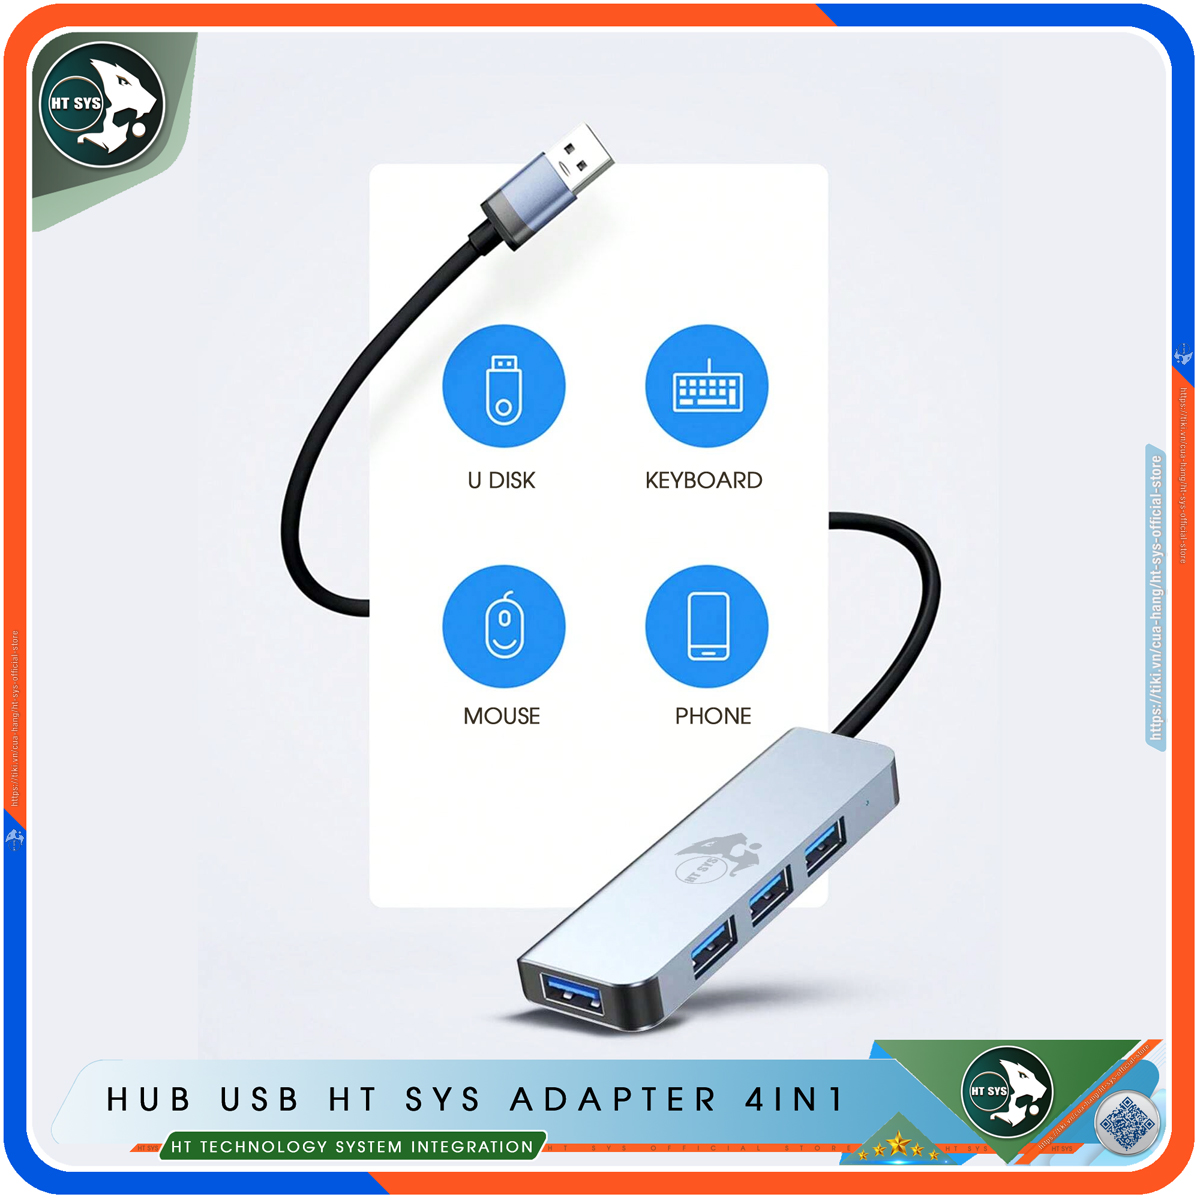 Hub USB 3.0 Và Hub Type C HT SYS Adapter 4in1 - Cổng Chia USB Mở Rộng Kết Nối Tốc Độ Cao Dành Cho Macbook, Laptop, PC - Hub Chuyển Đổi USB Type-C Hỗ Trợ Sạc Pin, Kết Nối Đa Năng ổ Cứng, Bàn Phím, Chuột, Máy In, Ổ Chia USB - Hàng Chính Hãng